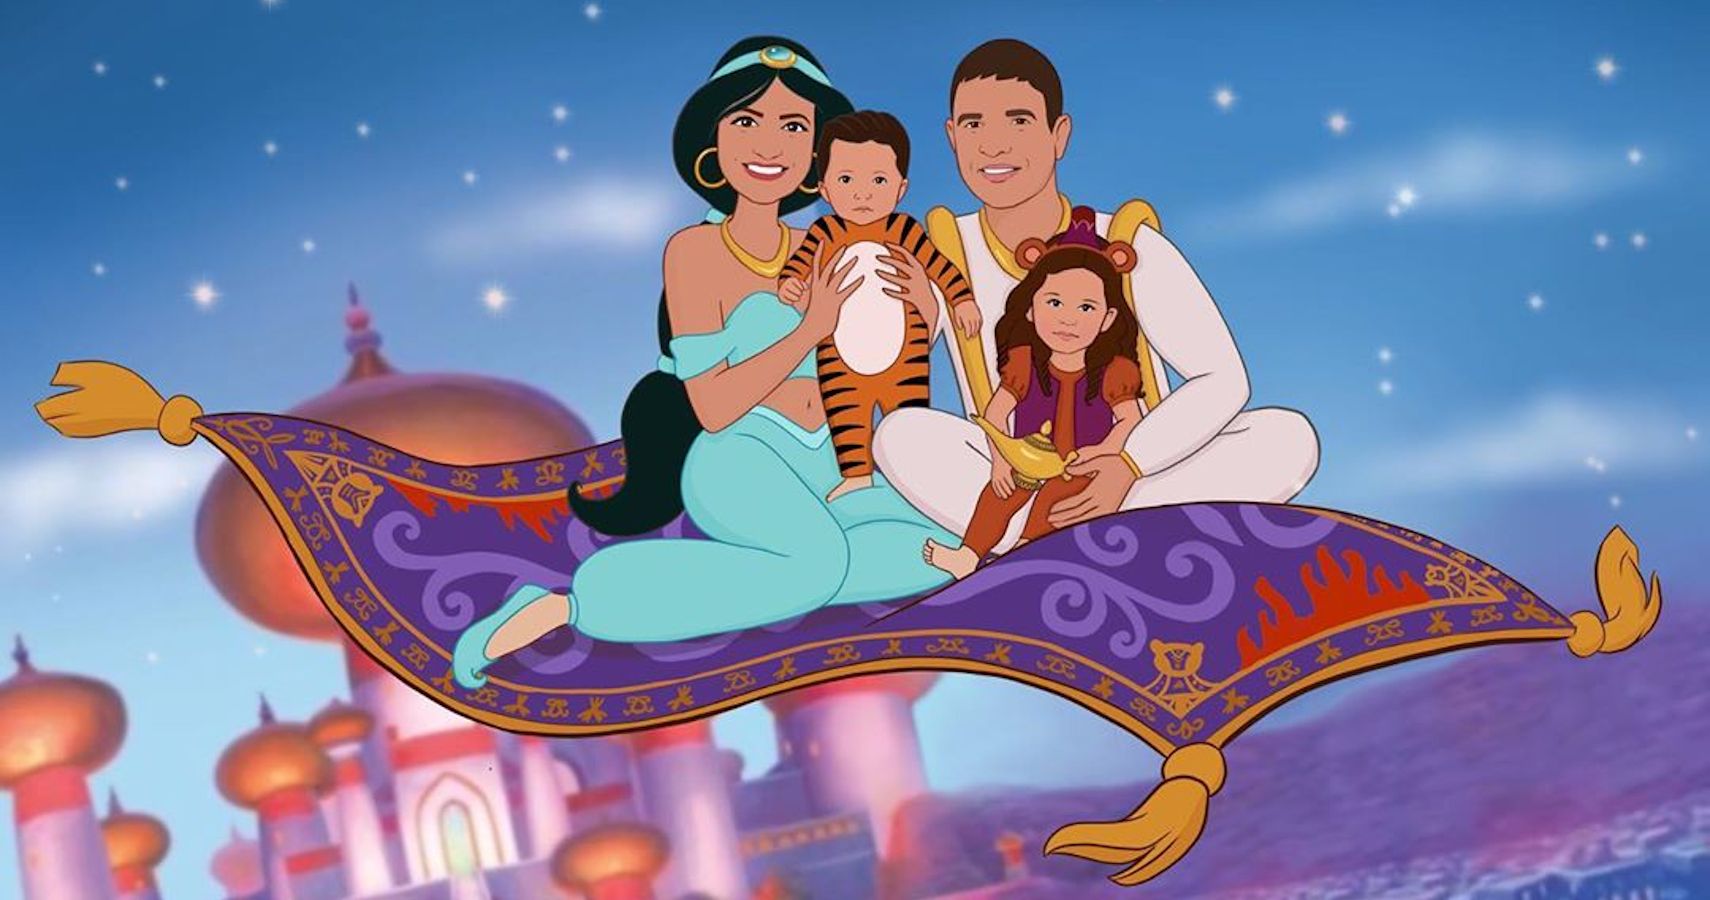 Alladin's Family on a magic carpet